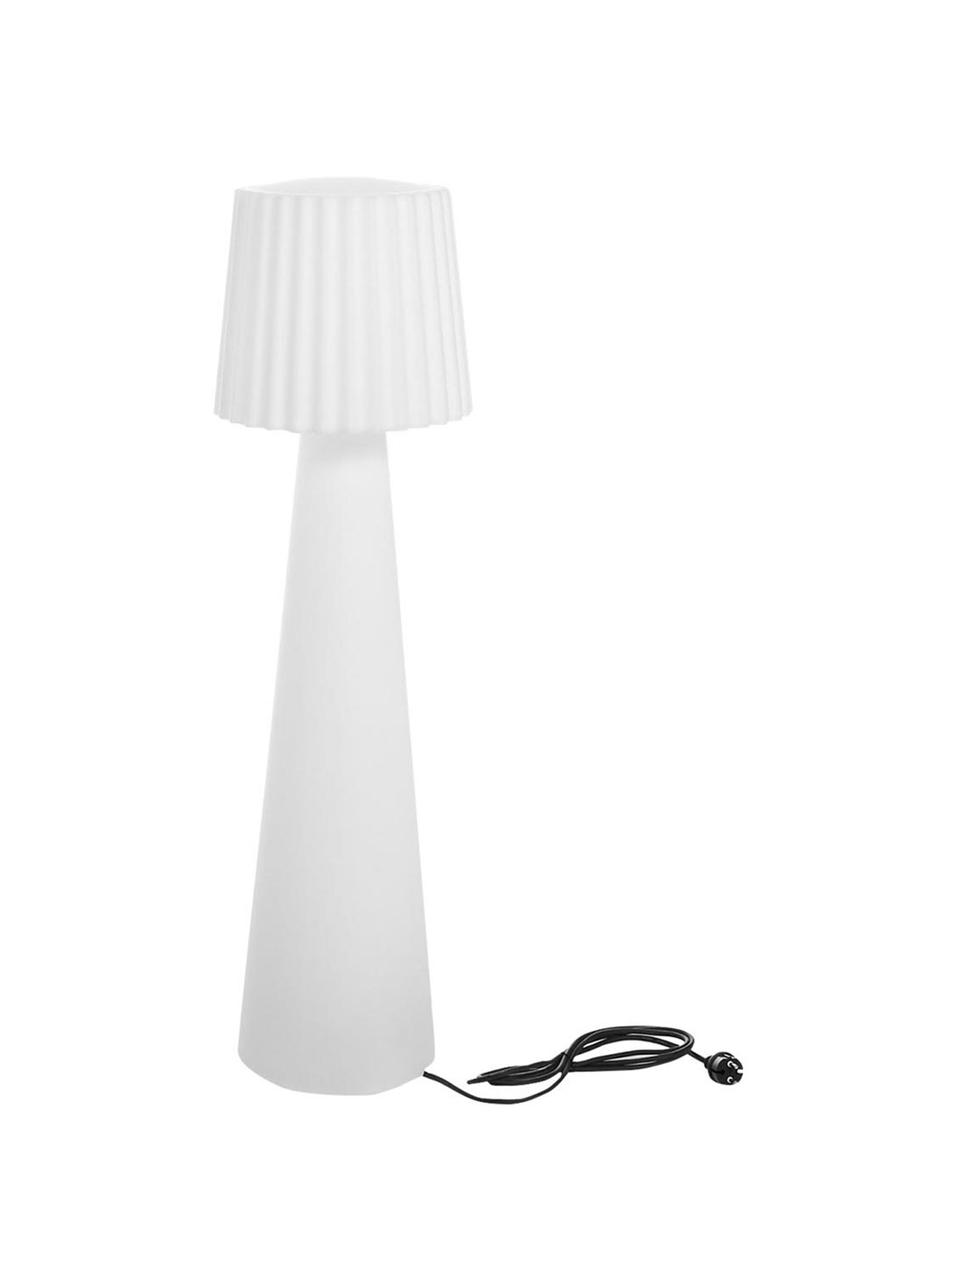 Outdoor Stehlampe Lady mit Stecker, Weiß, Schwarz, Ø 38 x H 150 cm